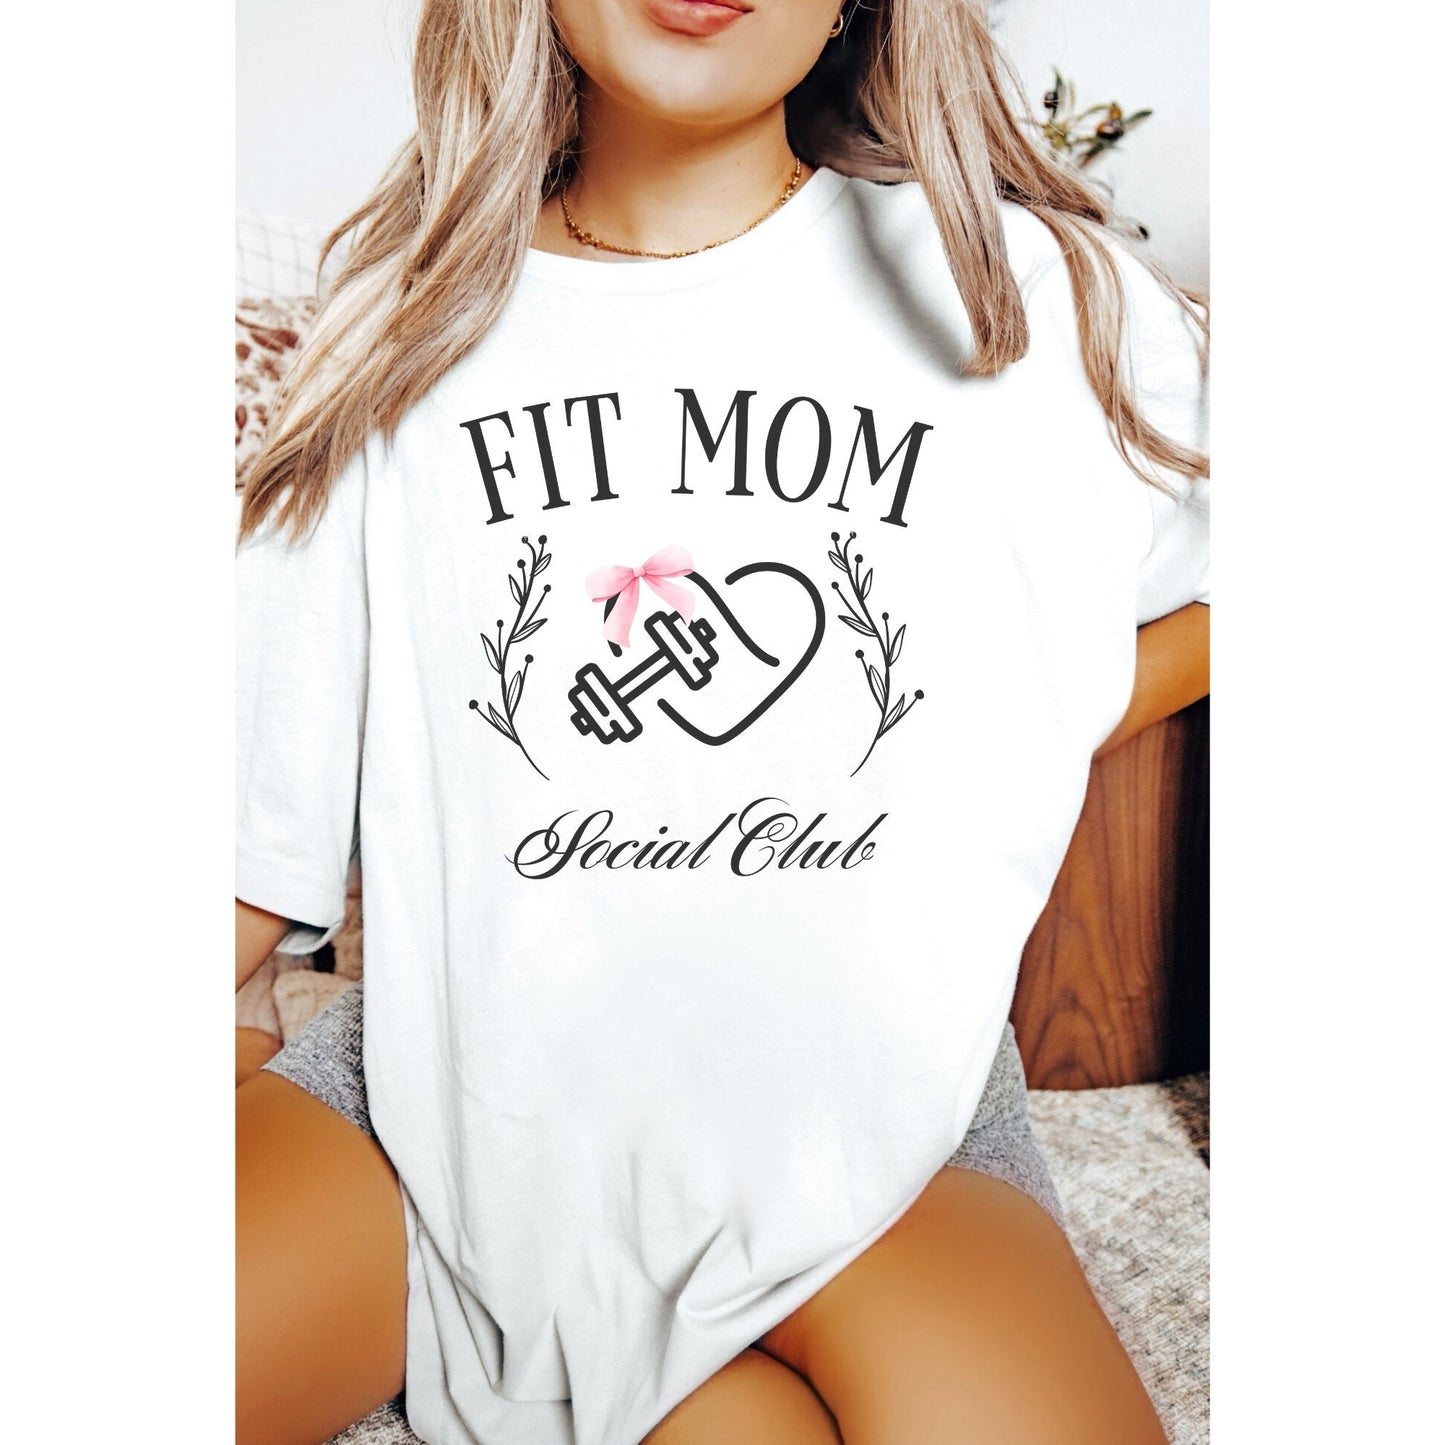 Fit Mom Social Club Shirt